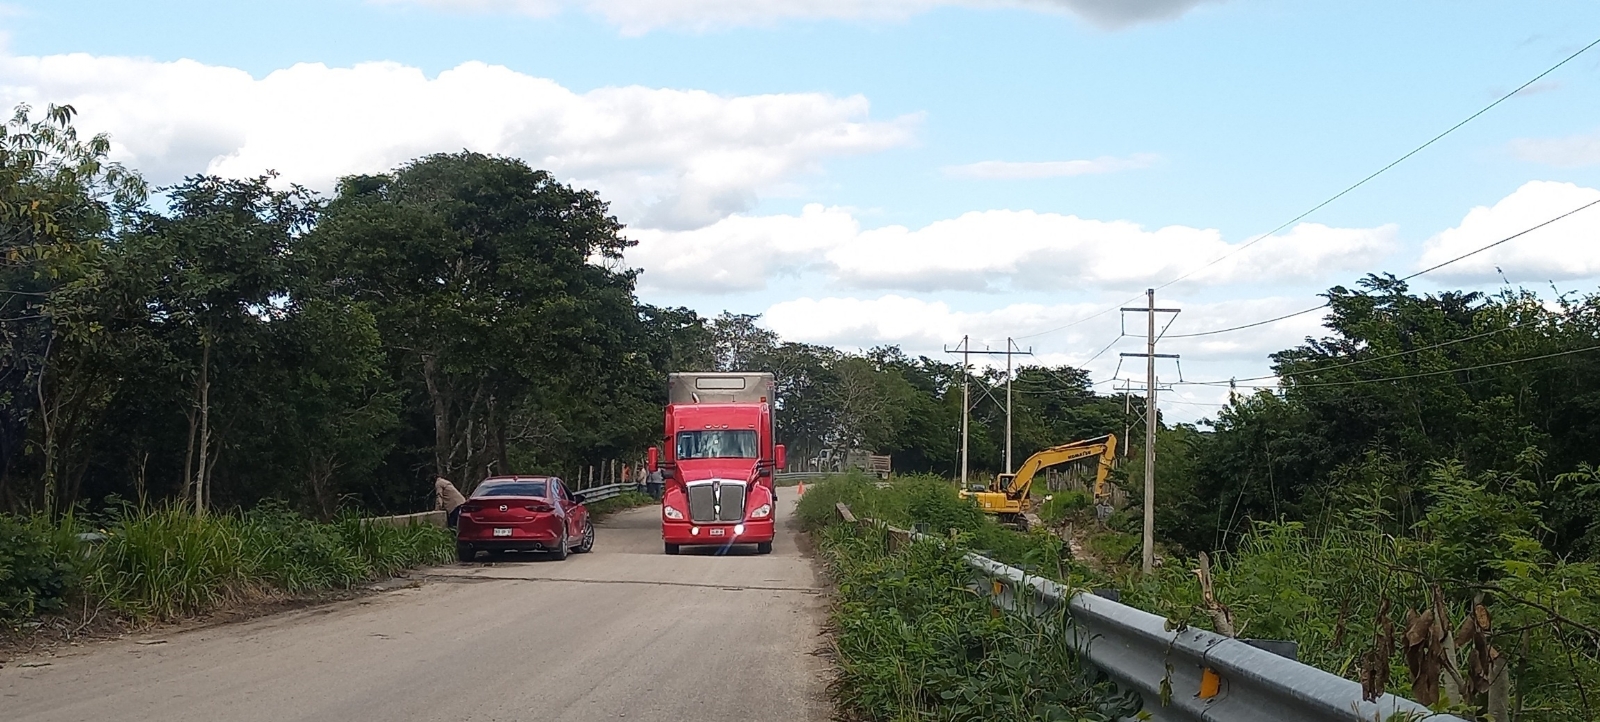 Seduopi Campeche inicia trabajos de reparación en el puente "Miguel Alemán" de Candelaria